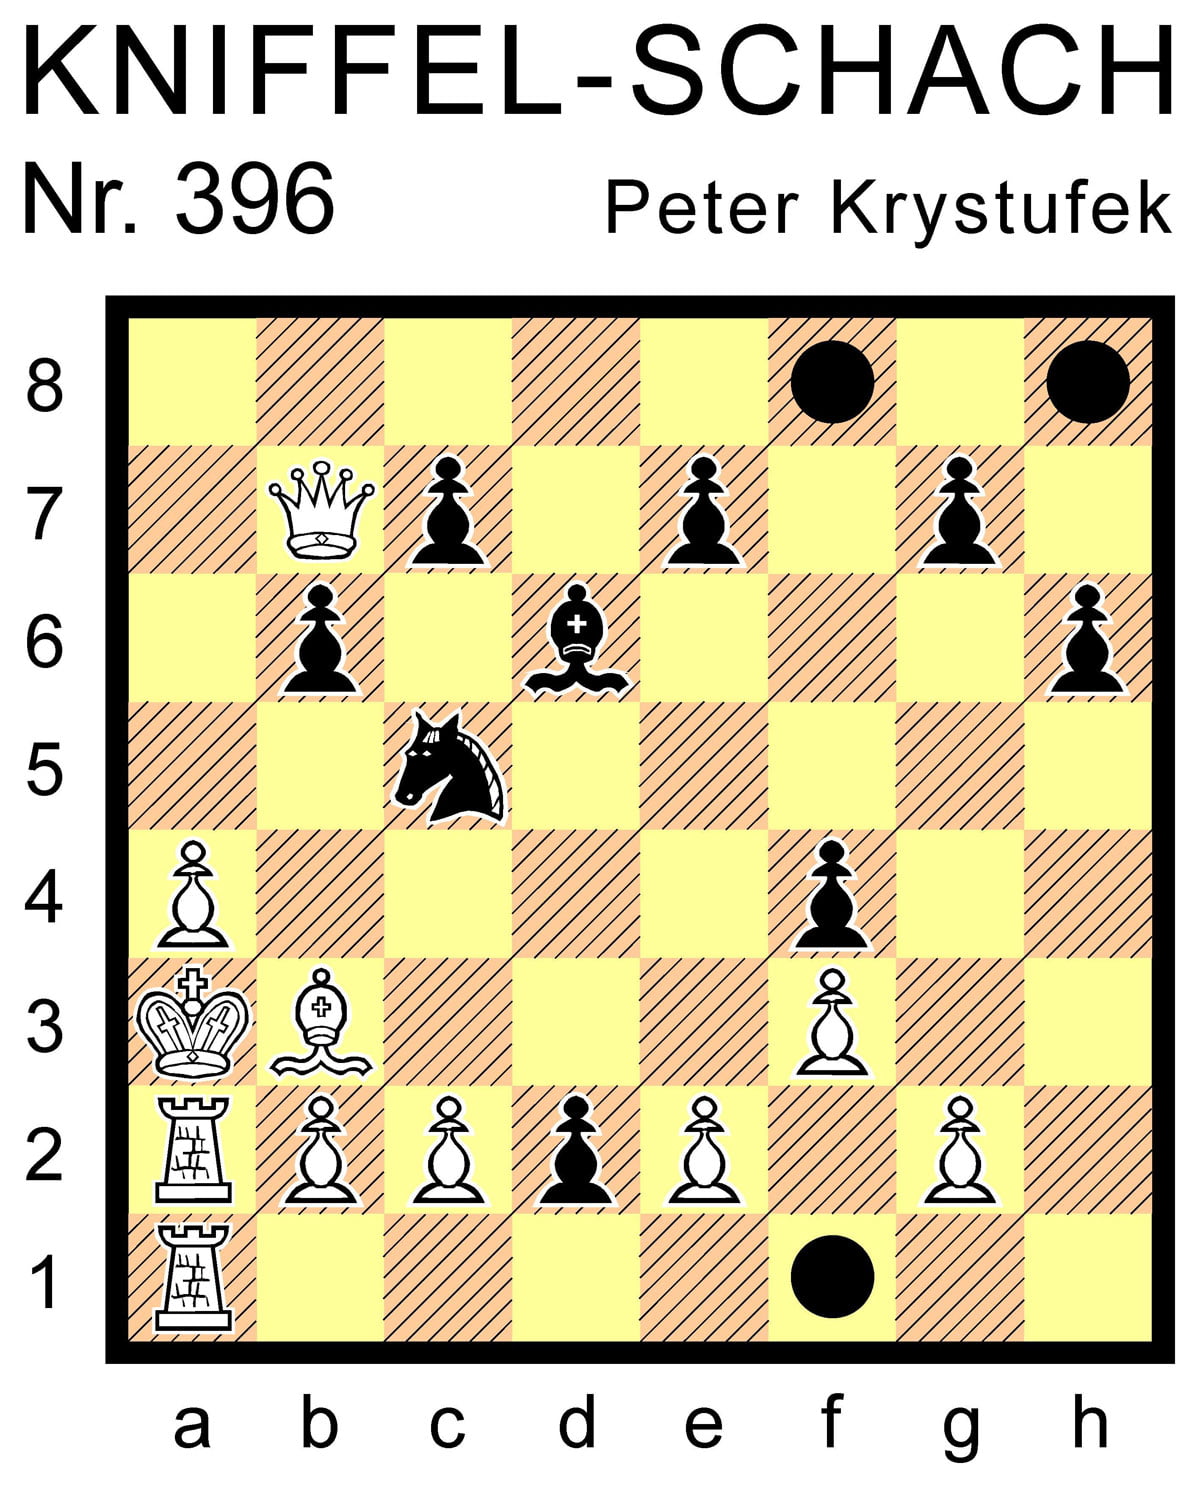 Kniffel-Schach Nr. 396